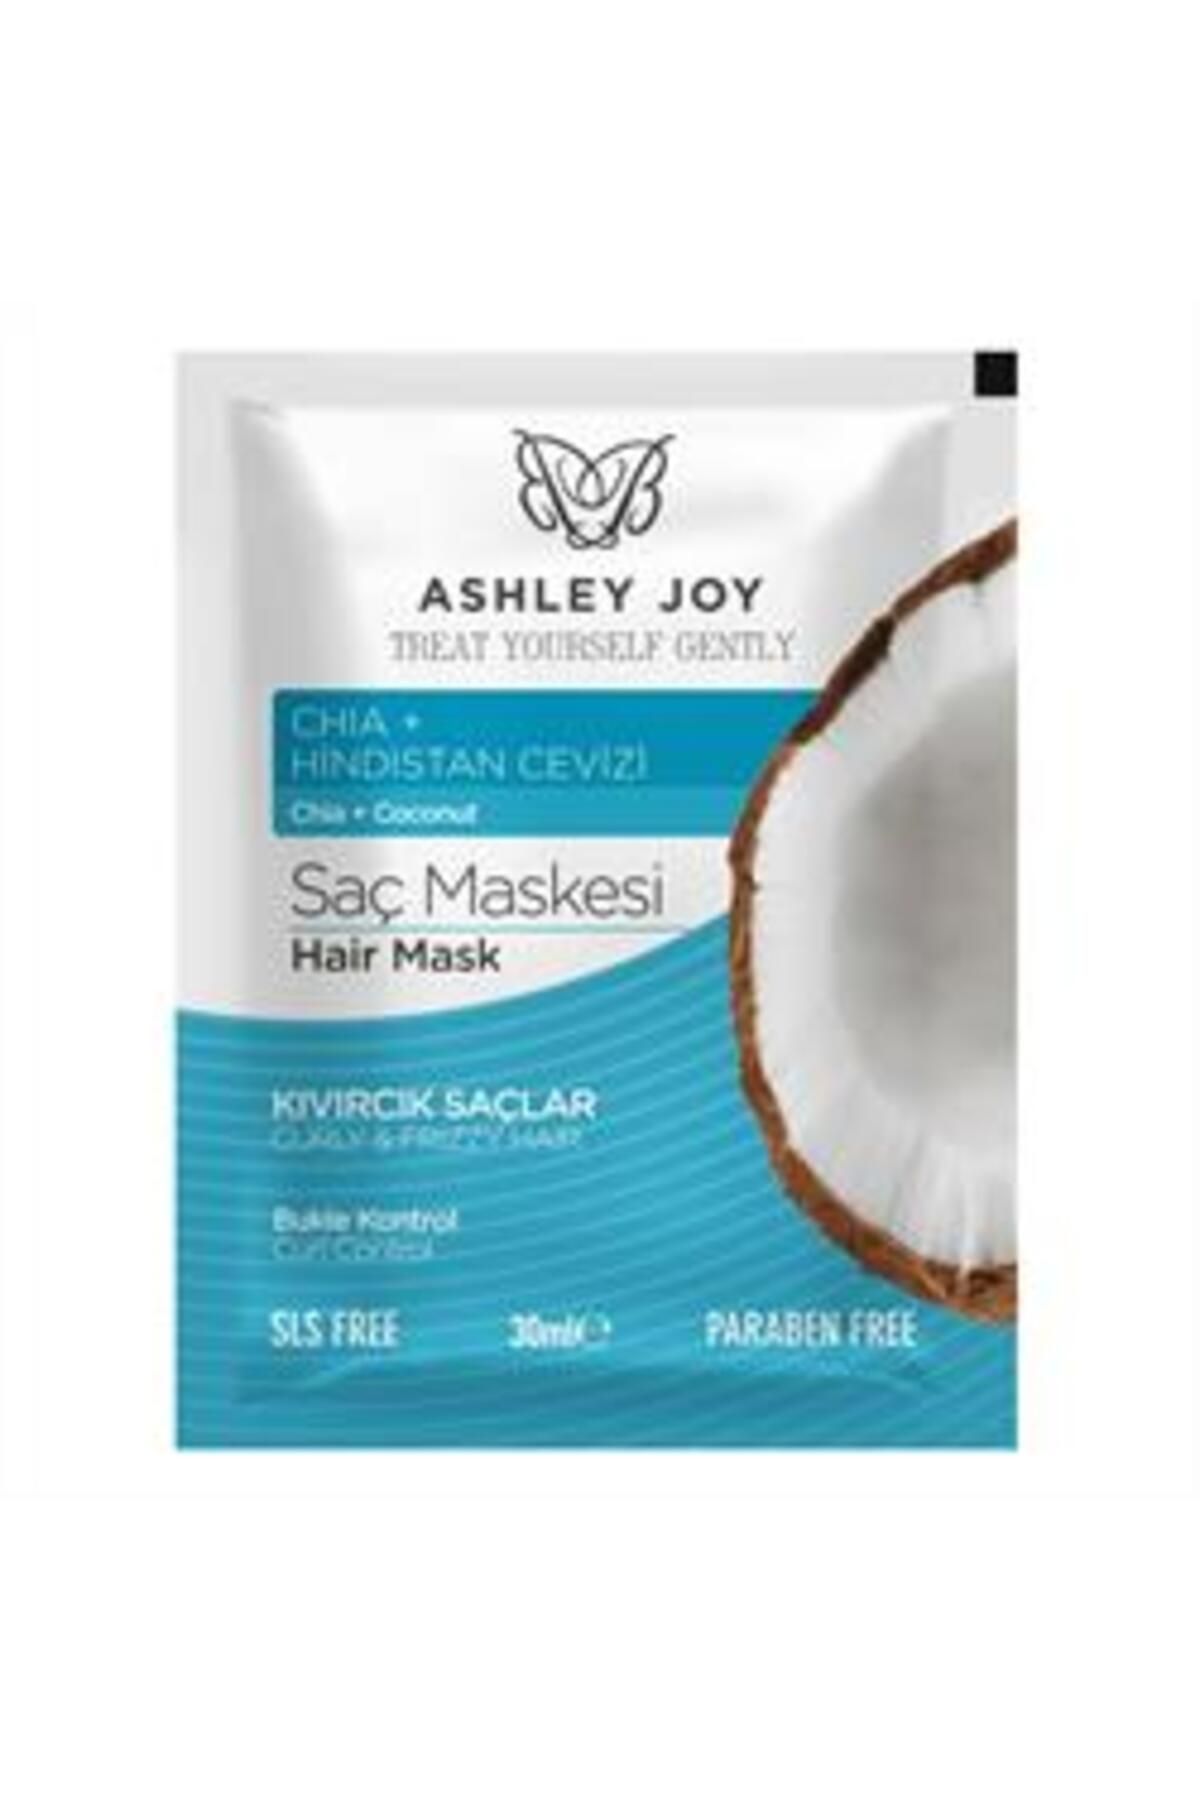 Ashley Joy Saç Maskesi Bukle Kontrol 30ml ( 1 ADET )